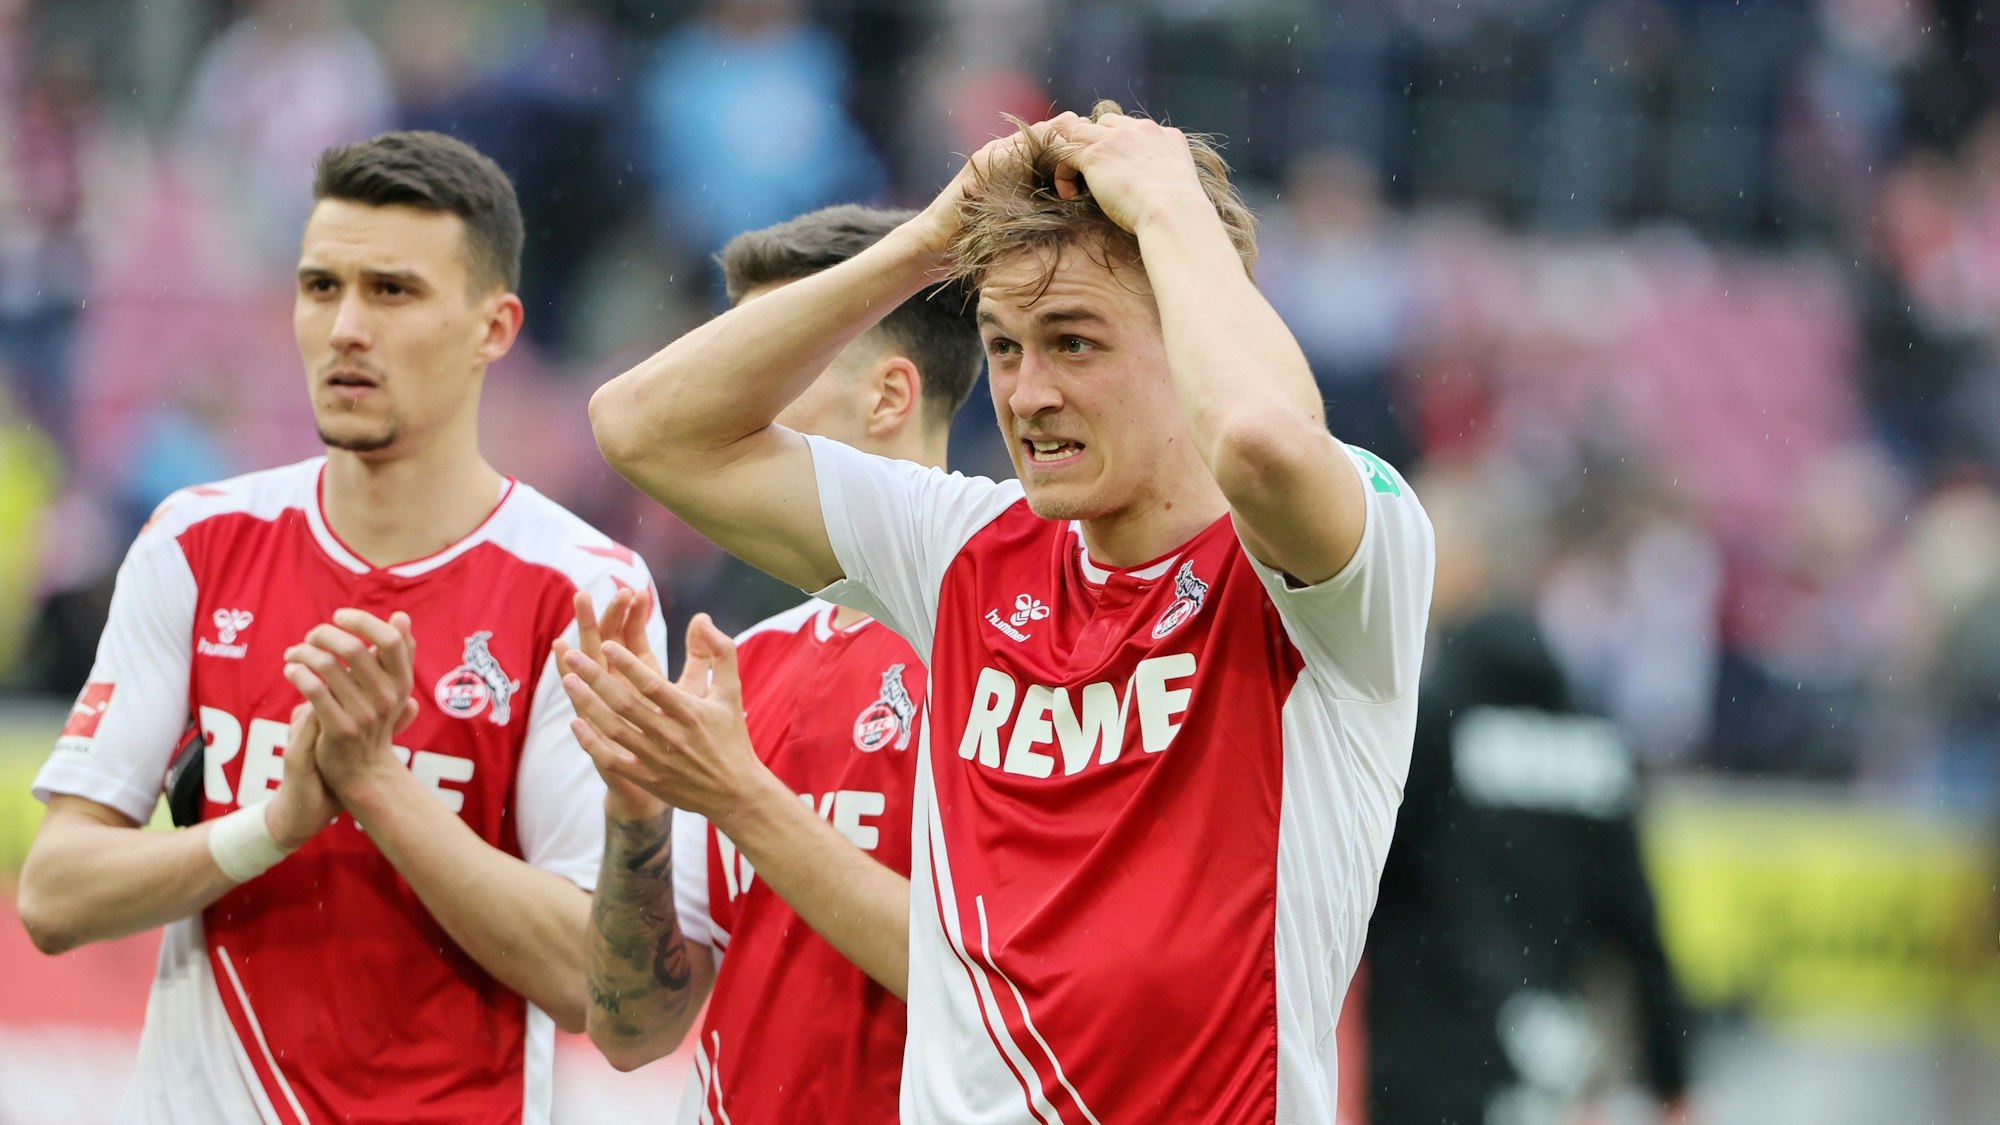 Timo Hübers rauft sich nach dem 1:1 gegen Mainz die Haare, im Hintergrund applaudiert Dejan Ljubicic den Fans.